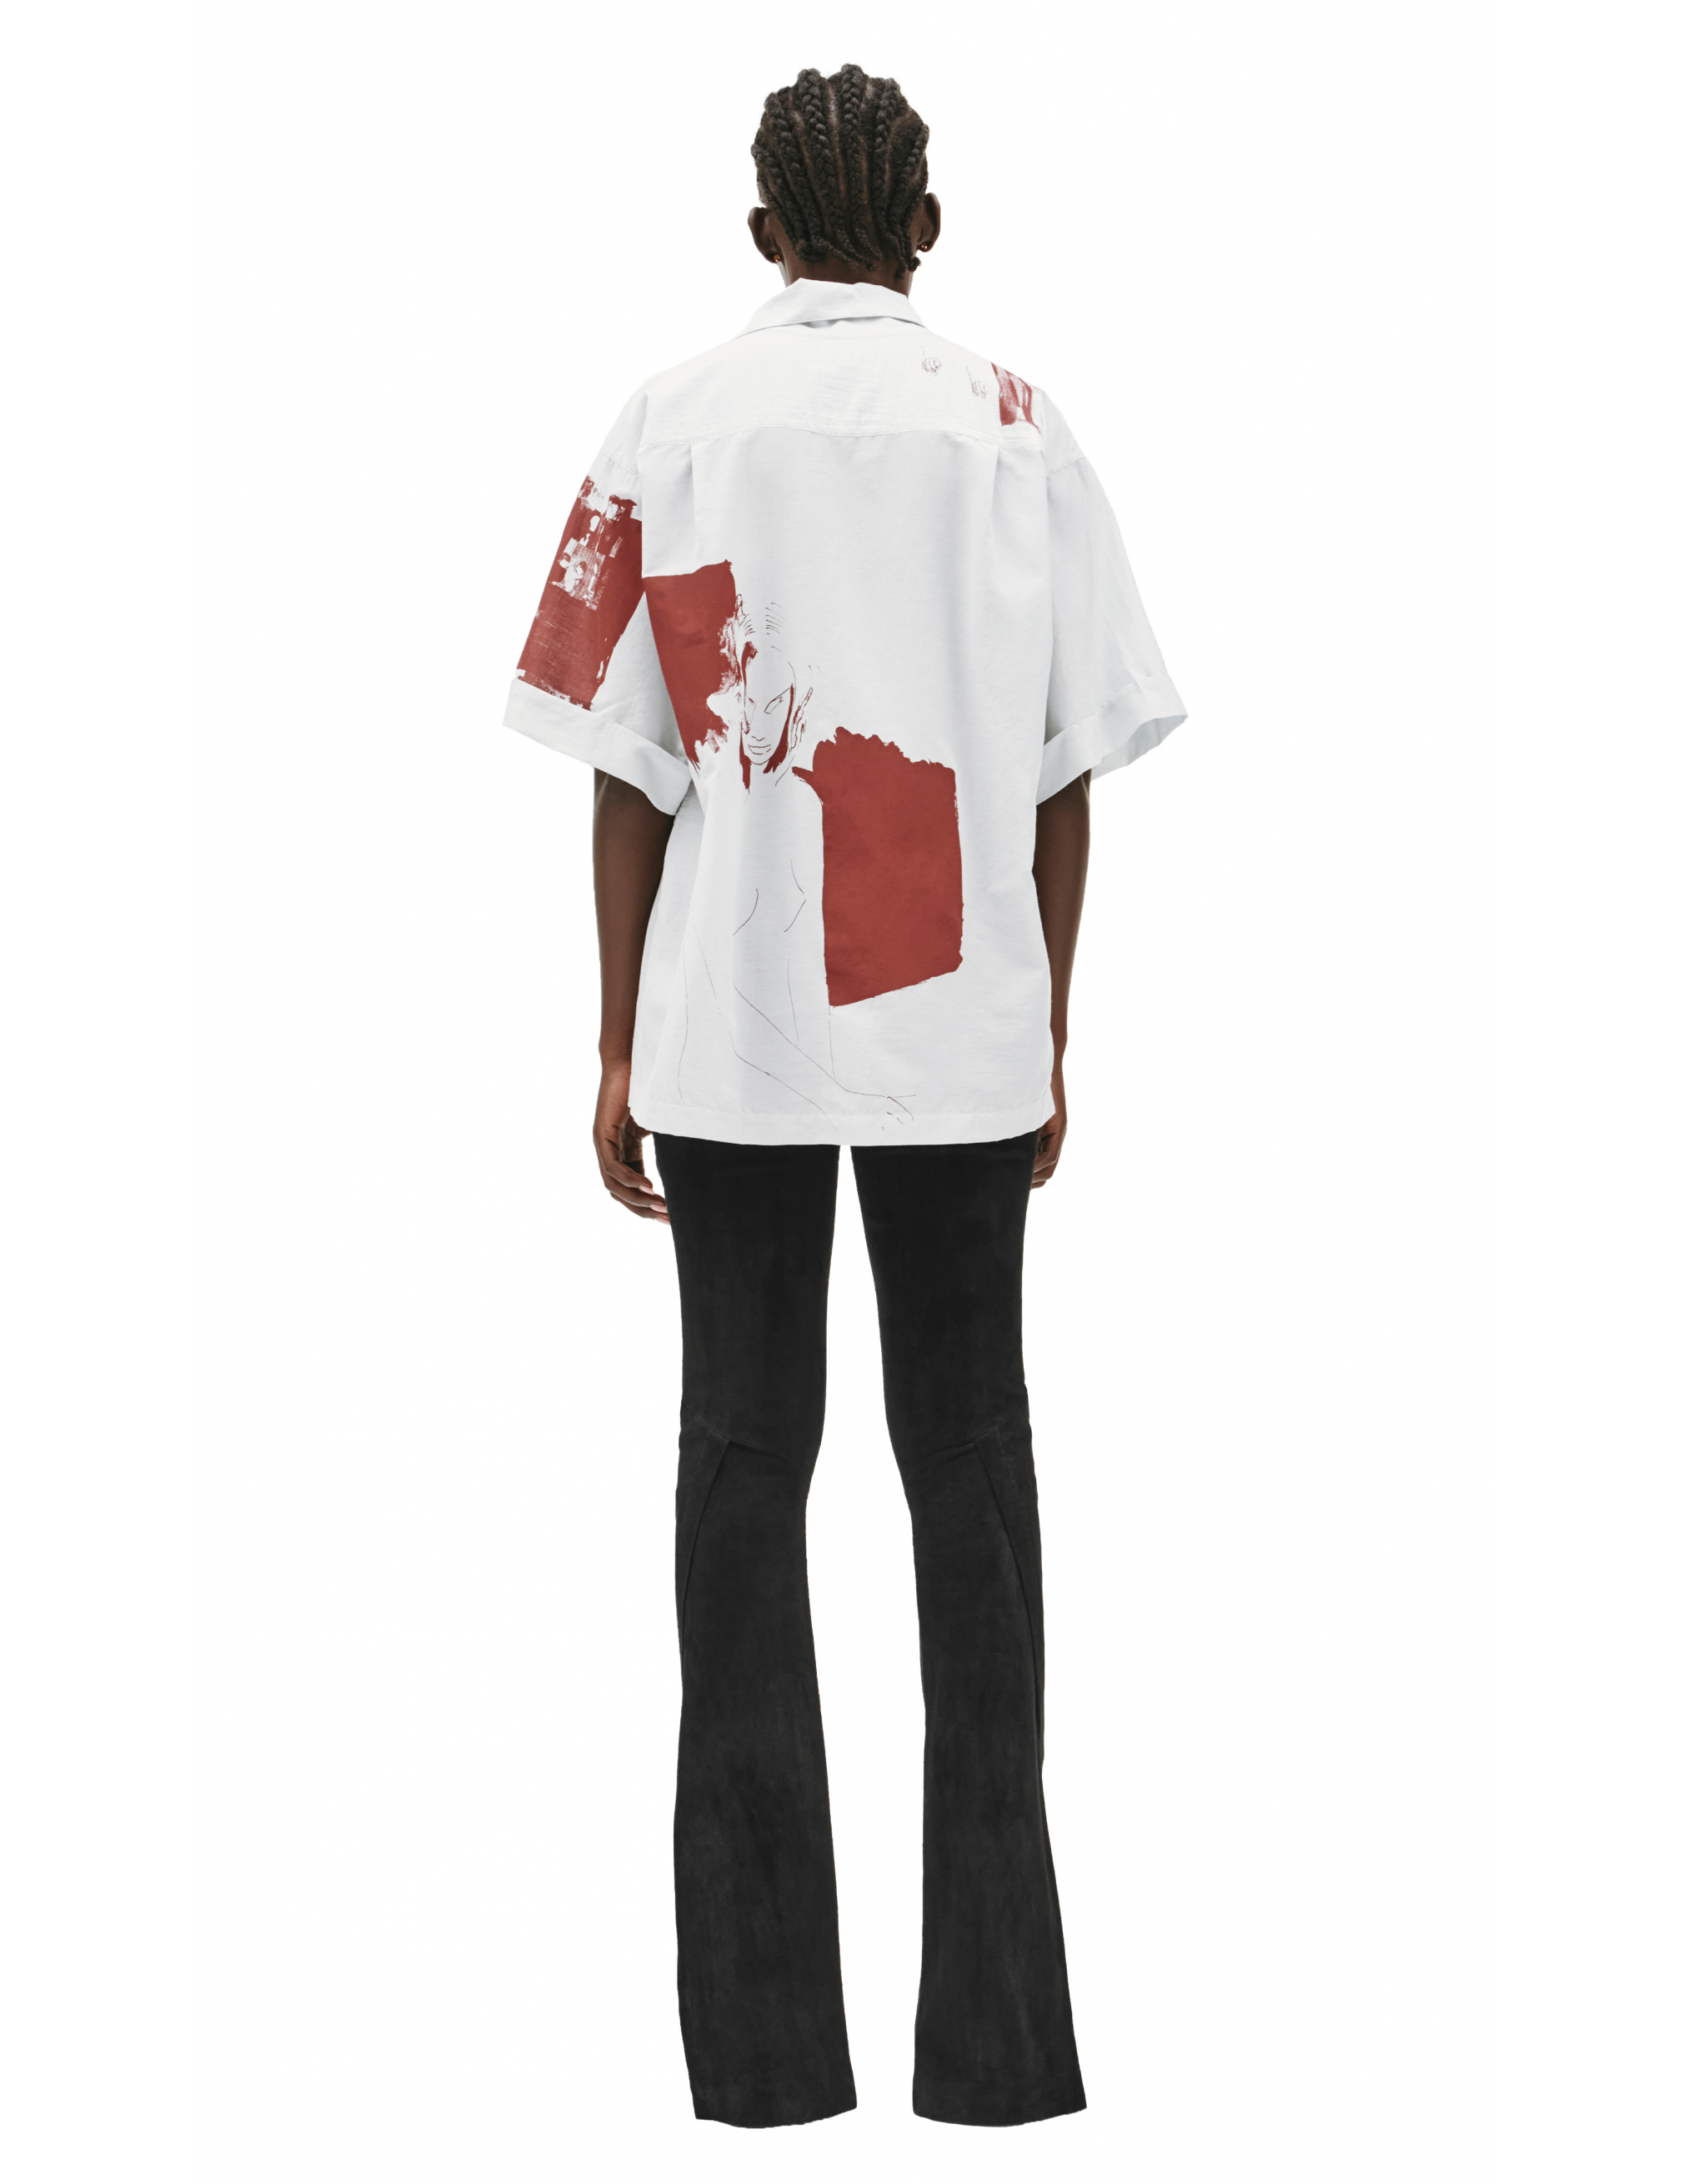 Рубашка из хлопка и шелка Enfants Riches Deprimes 040/186, размер XL;2XL 040/186 - фото 3